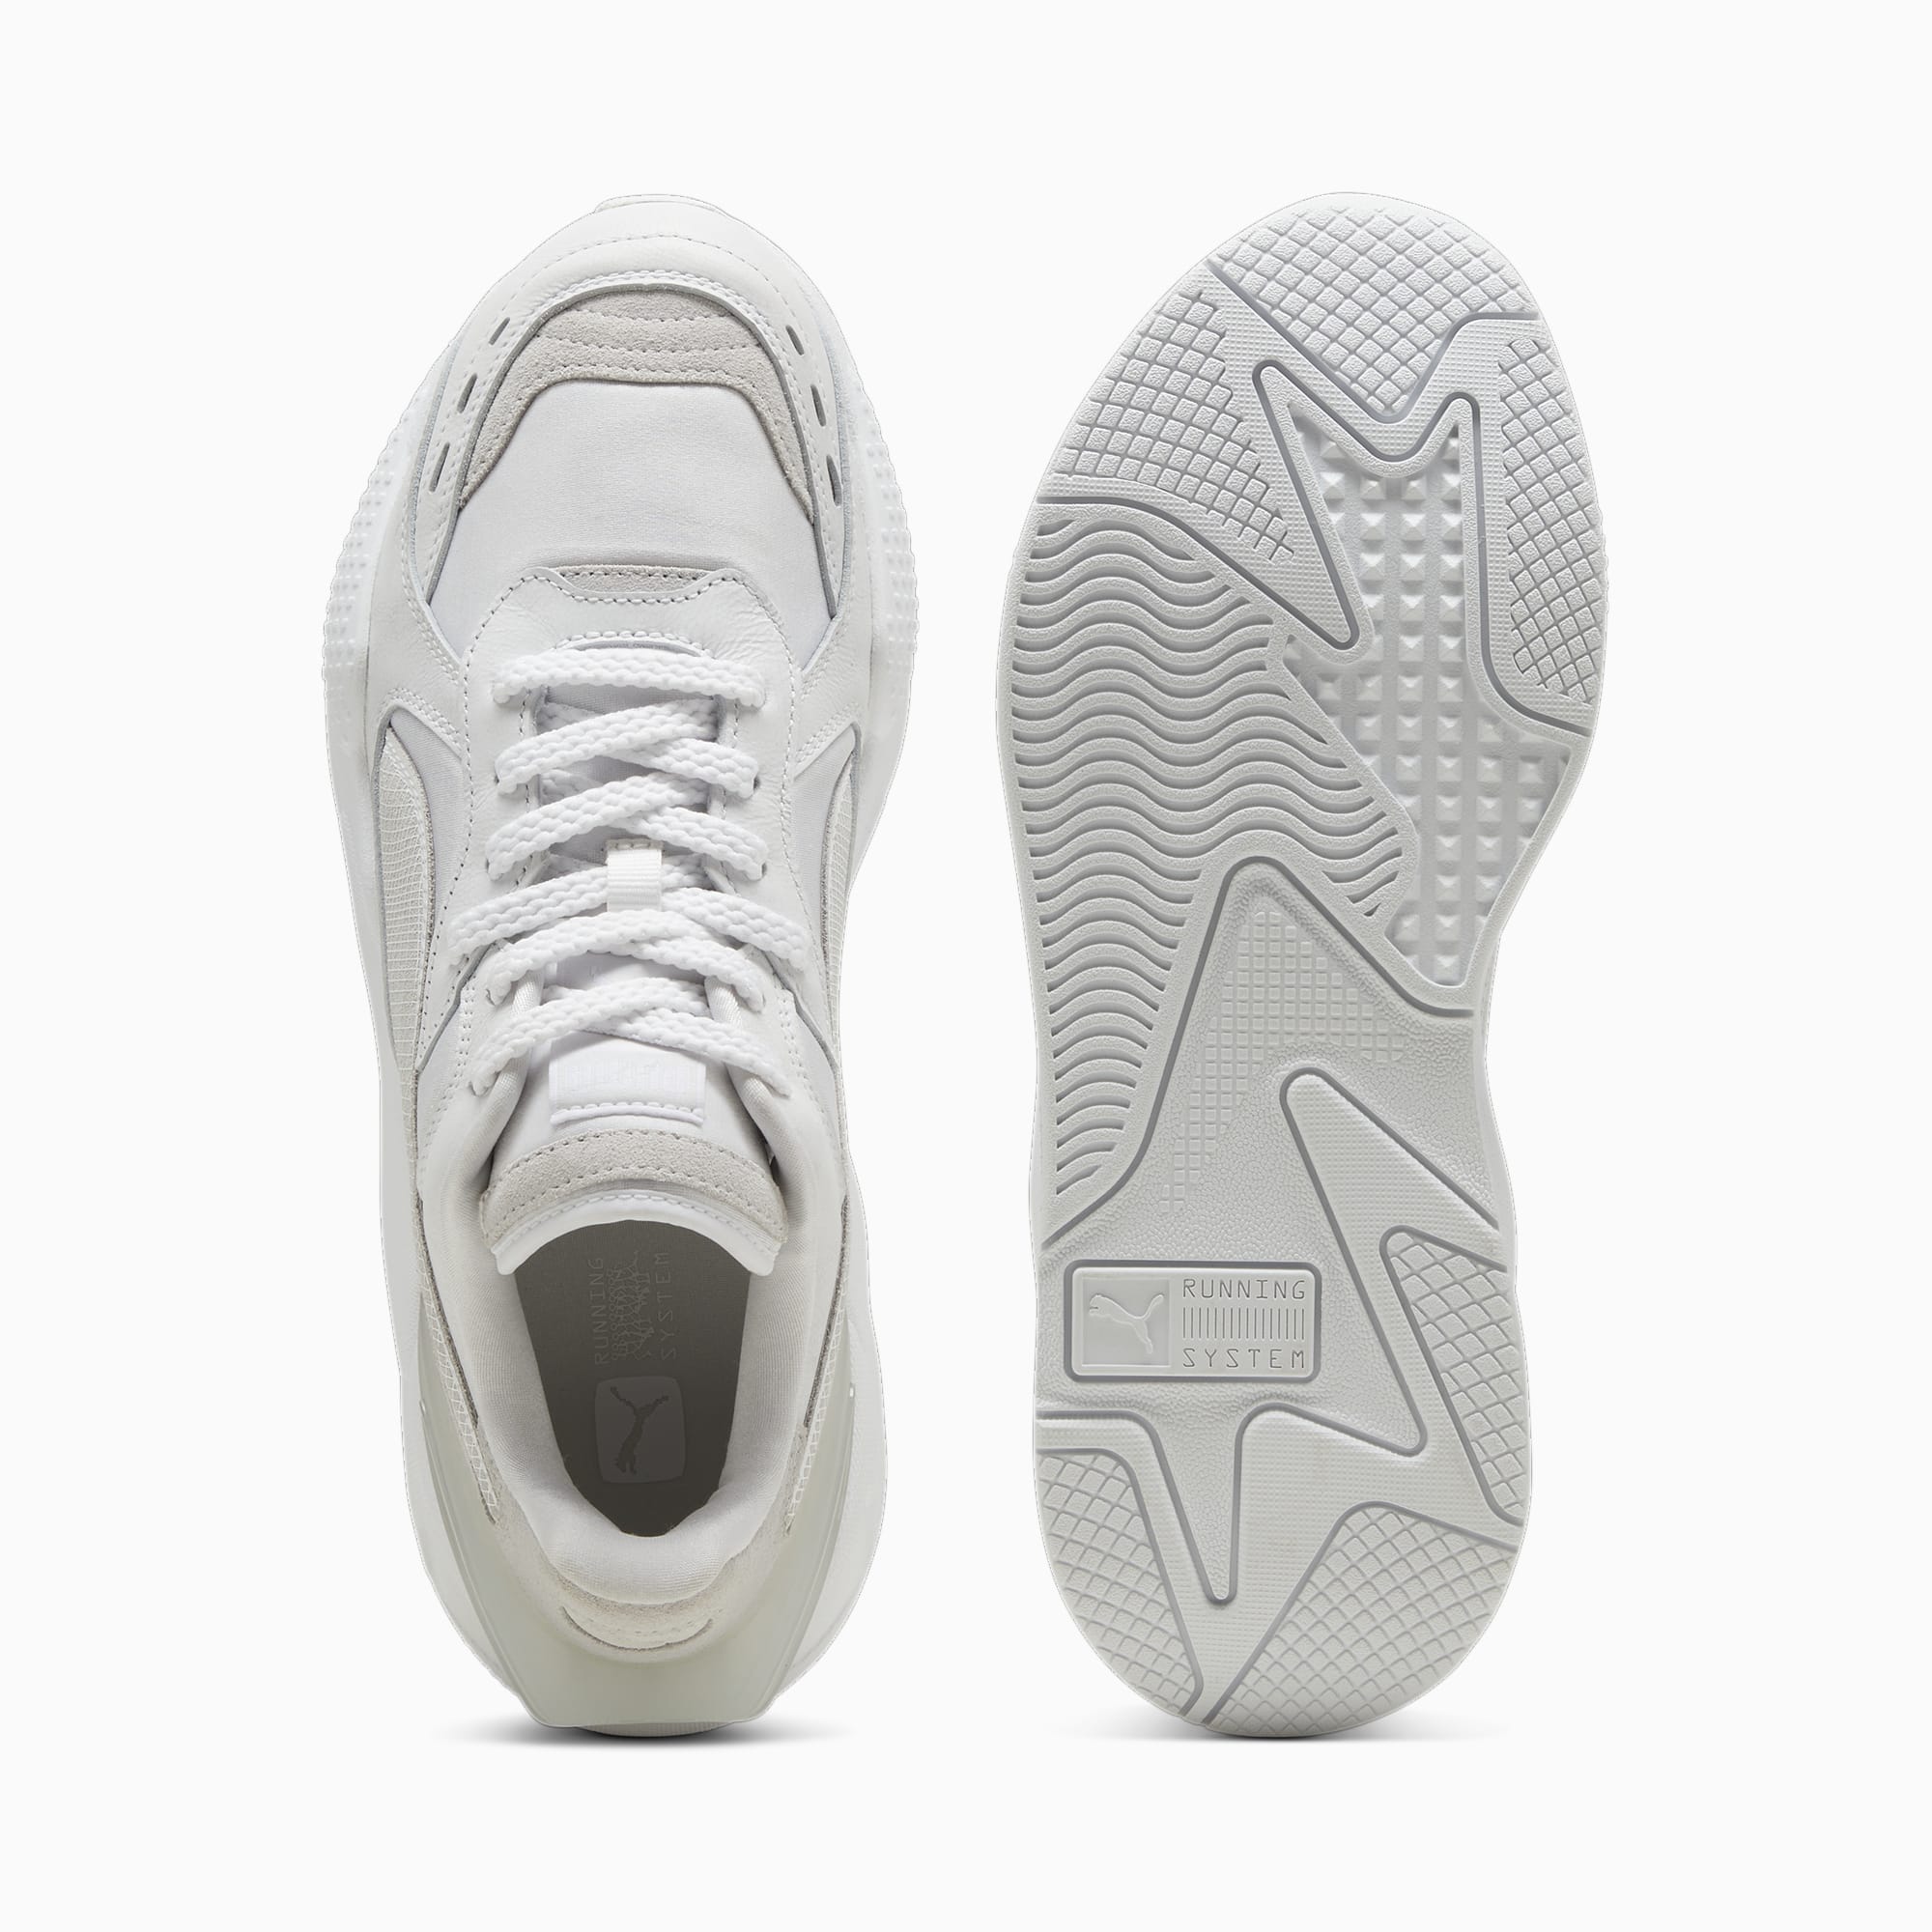 PUMA Chaussure Sneakers RS-X Spécial 40e Anniversaire, Blanc/Gris